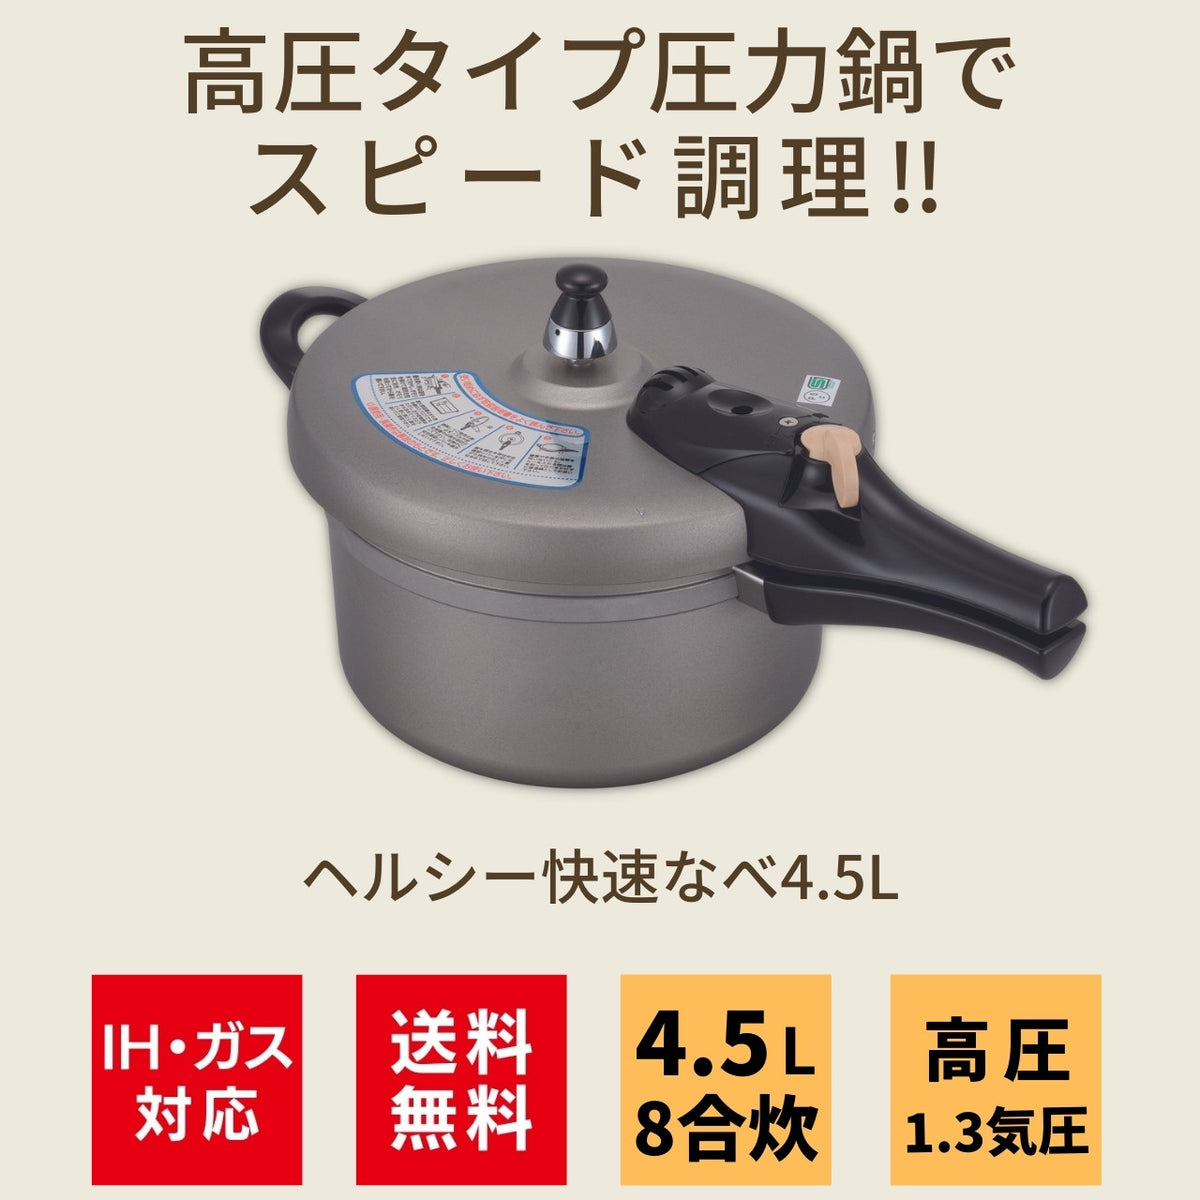 高圧タイプ日本製圧力鍋 IH ヘルシー快速なべ 4.5L アルミ鋳物なべ 8